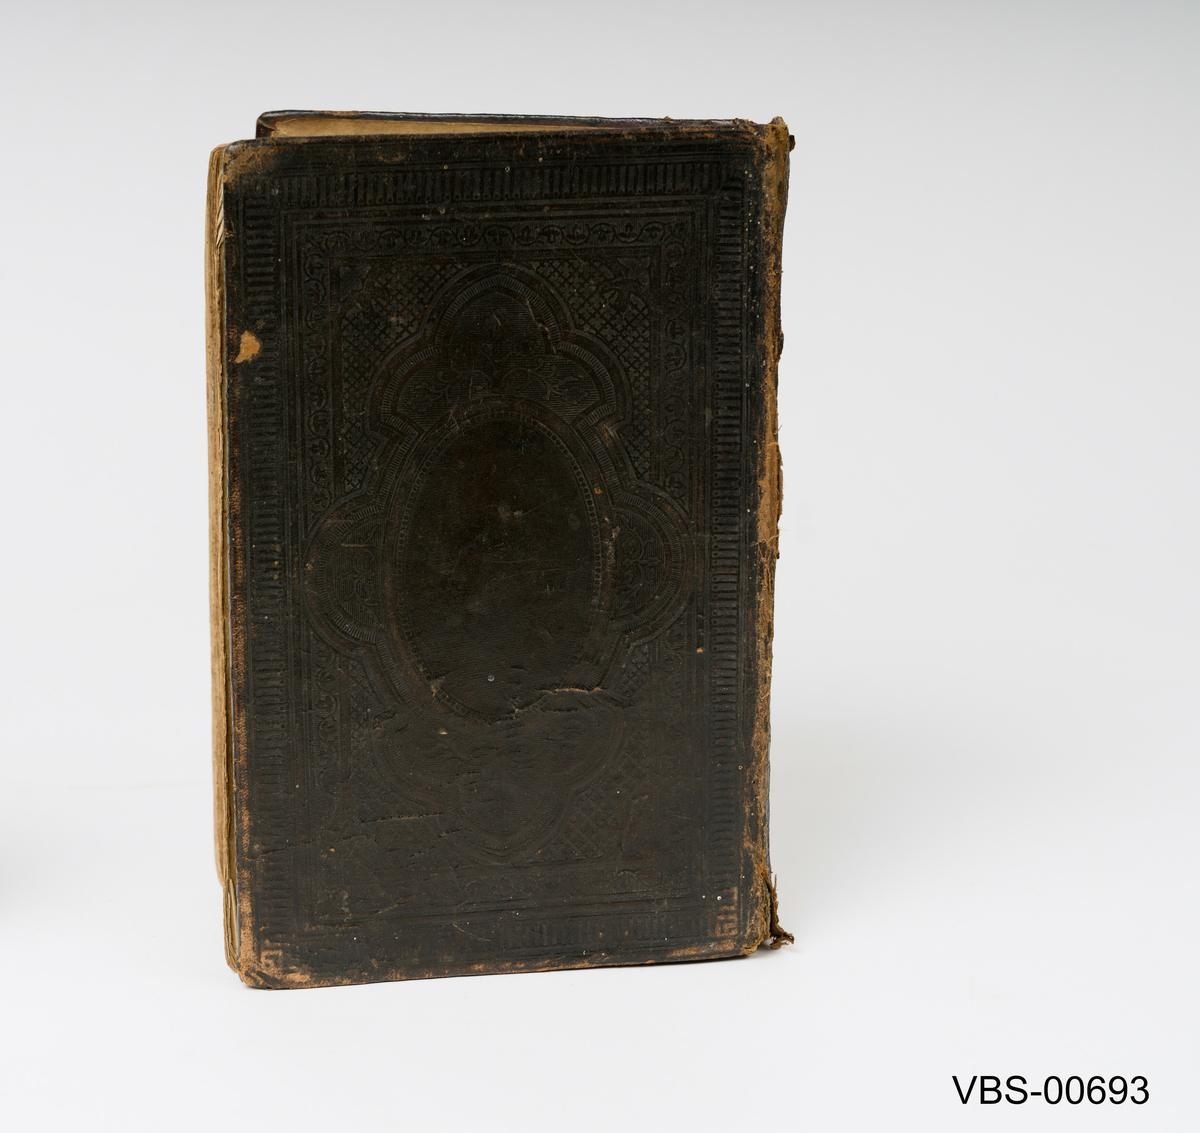 Bok, Det Nye Testamentet  innbundet med brunt skinn og dekor inngravert på skinnet.
Tykt i Christiania hos U Grøndahl, 1872.